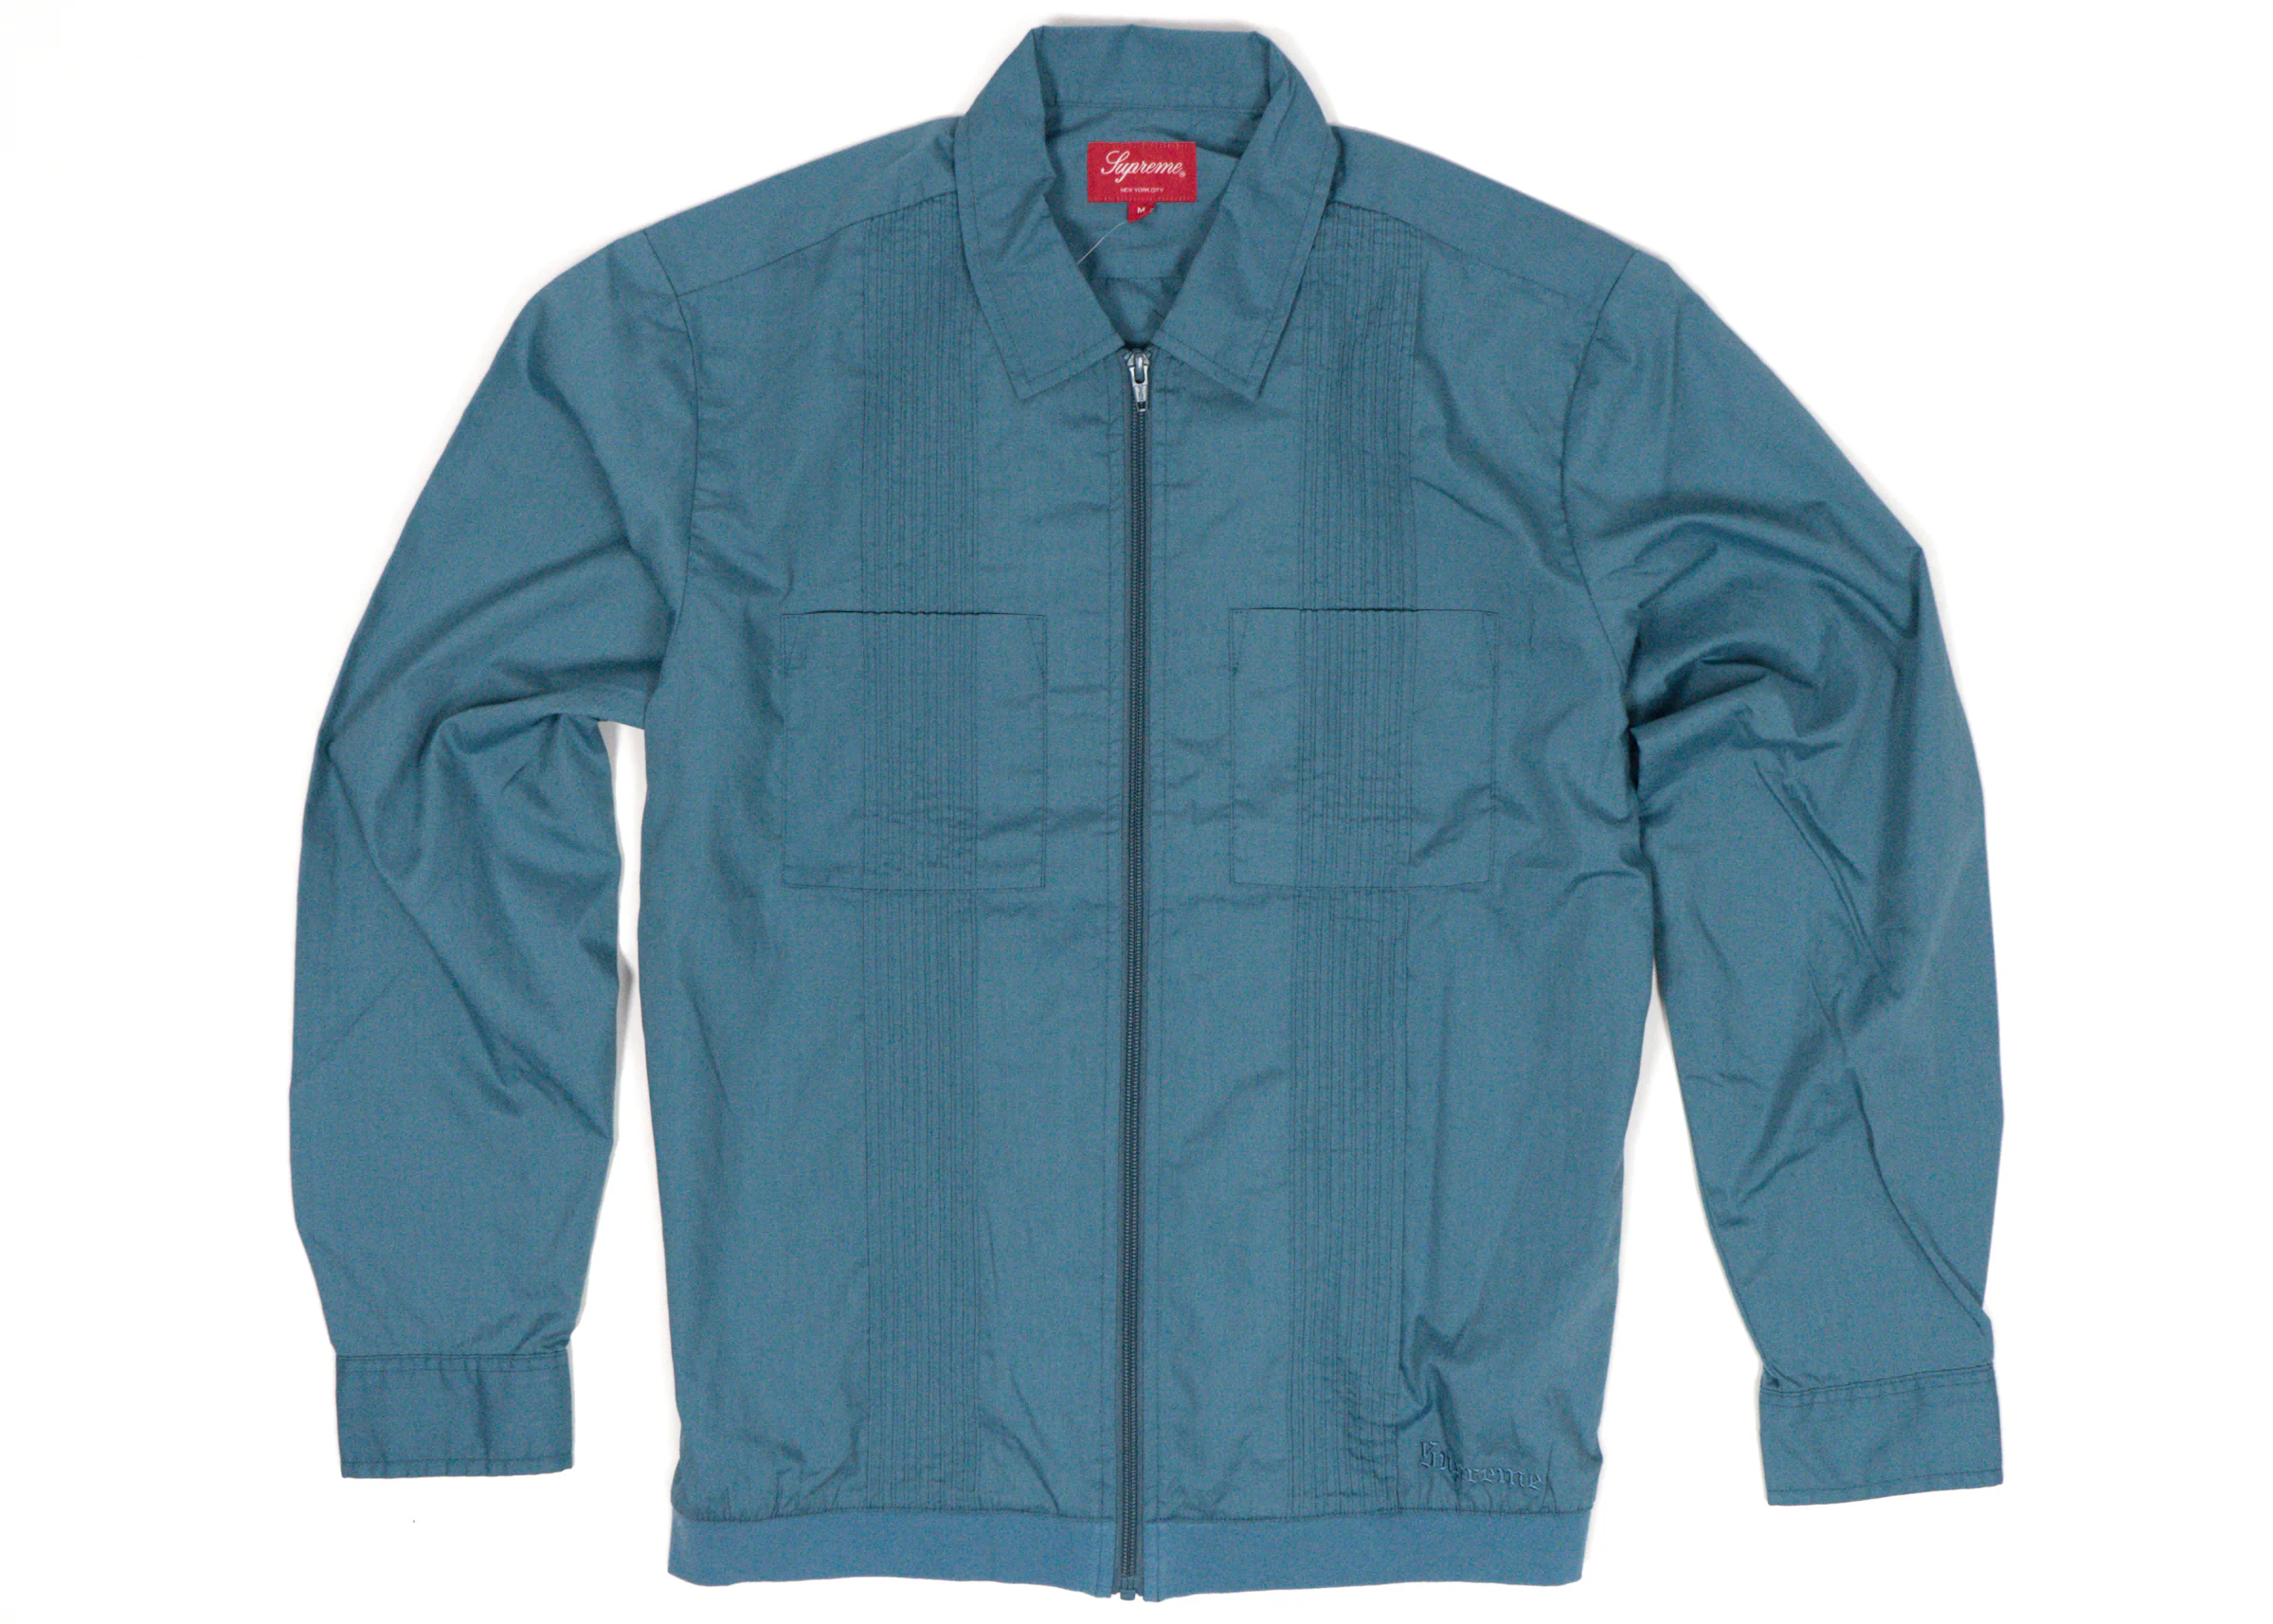 Supreme Comme des Garcons Shirt Patchwork Button Up Shirt Multicolor